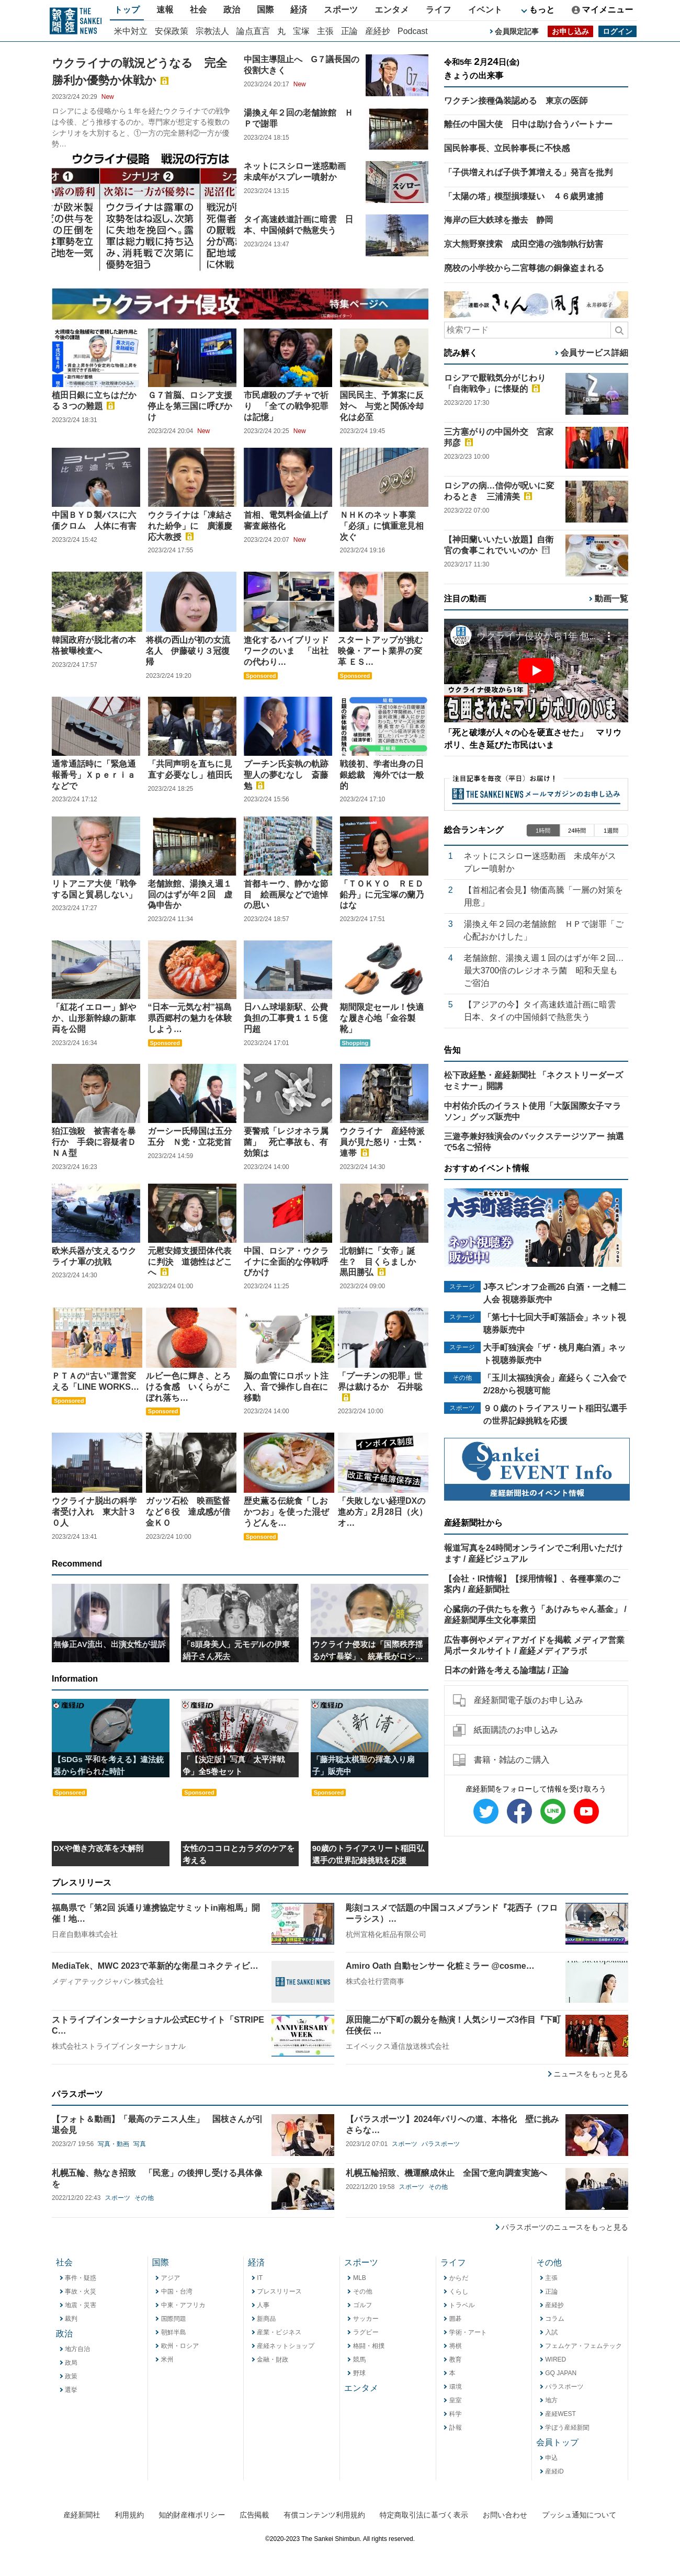 Sankei Shimbun at 2023-02-24 21:00:49+09:00 local time